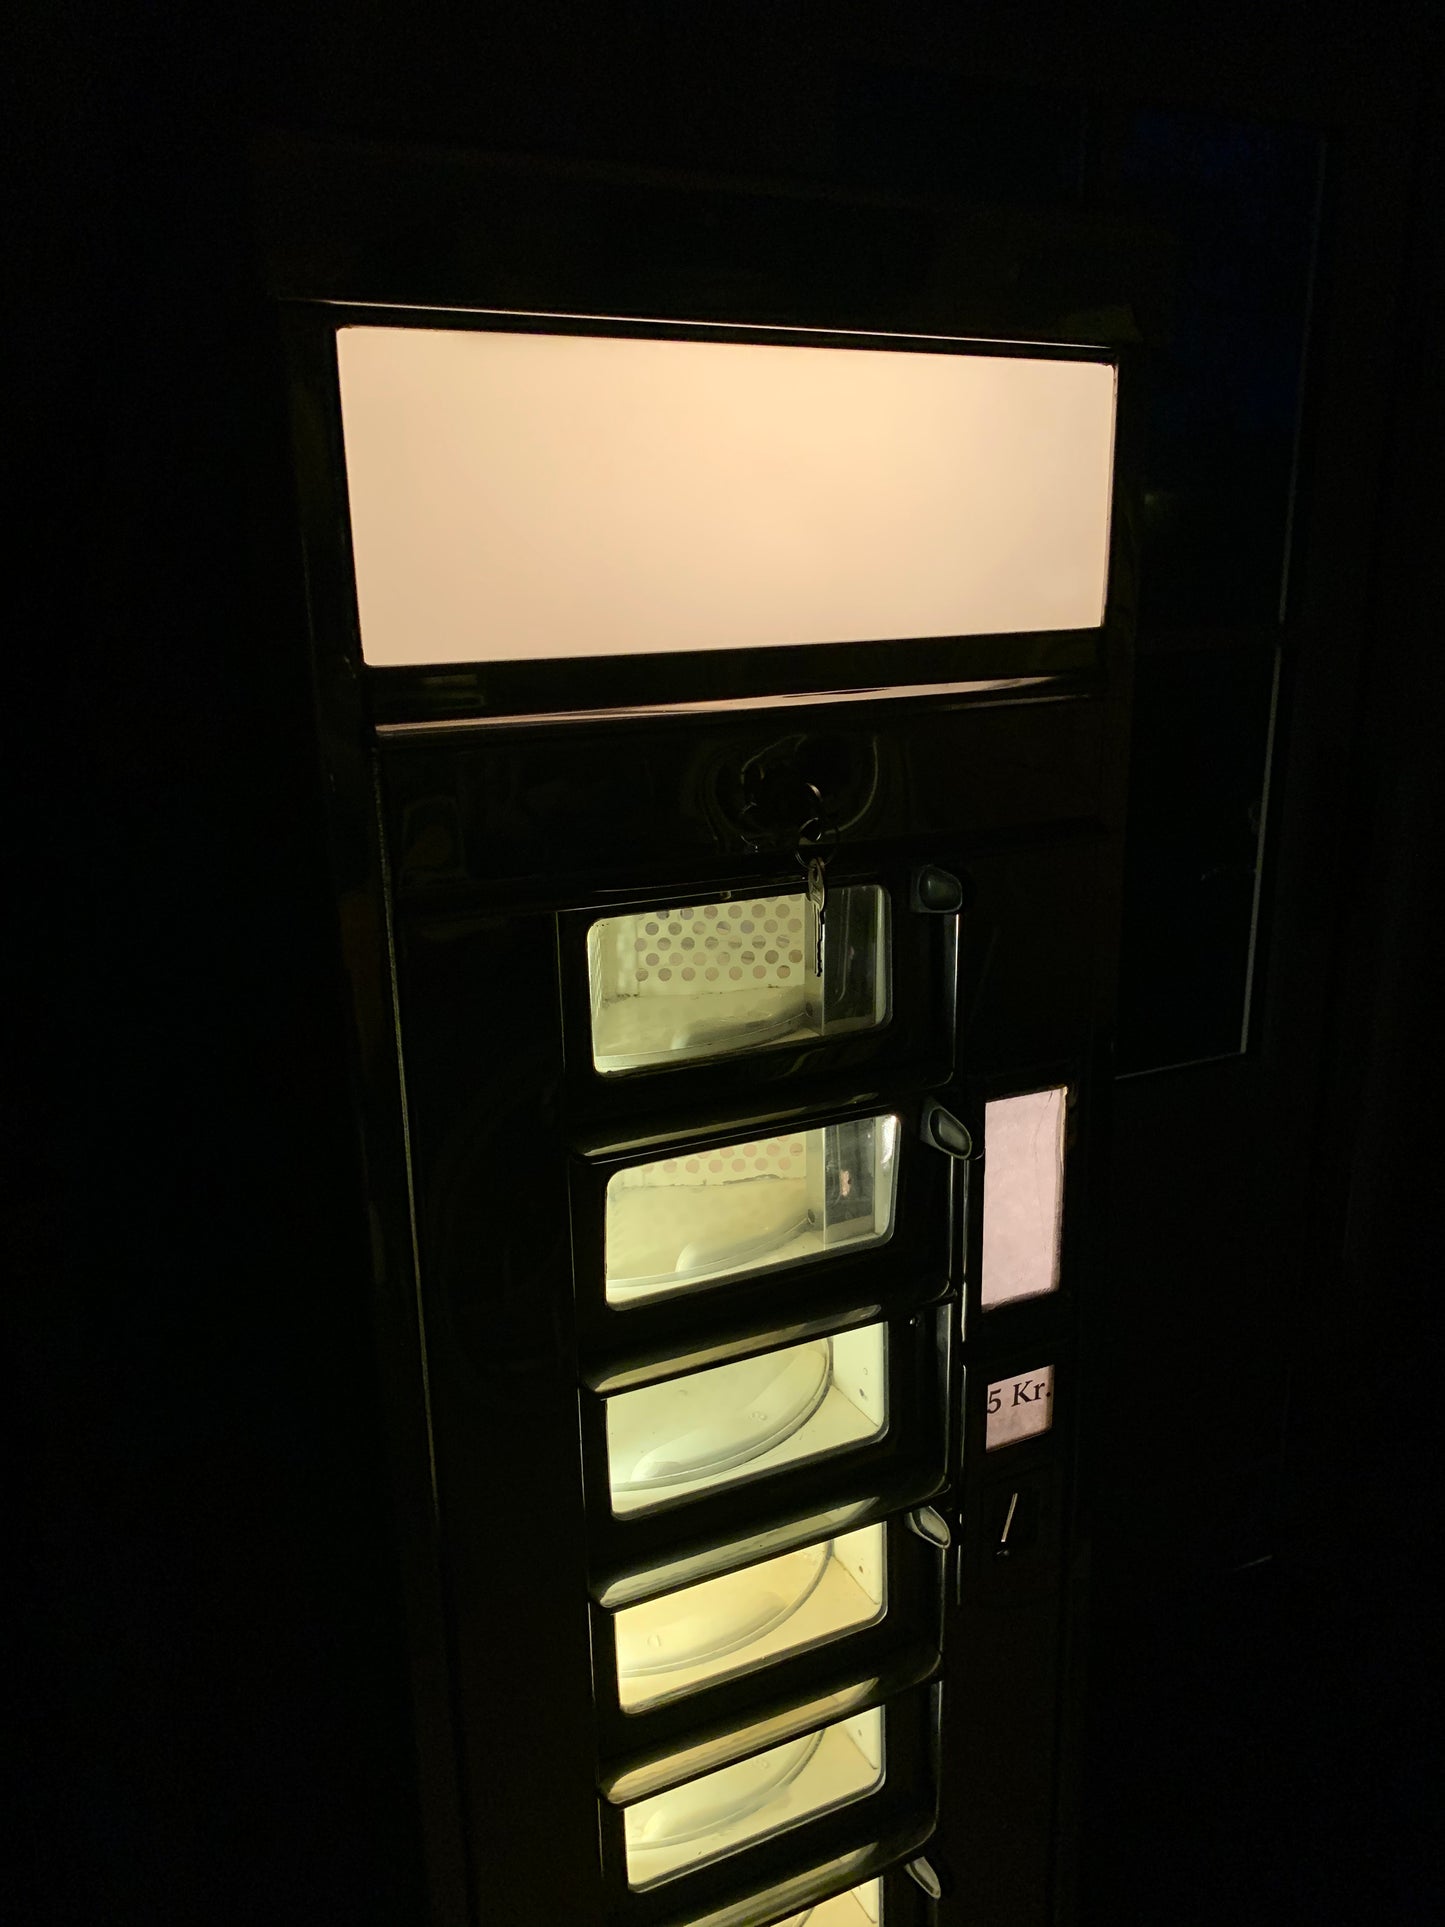 Fin og sjældent eksemplar af Wittenborg automaten med lys